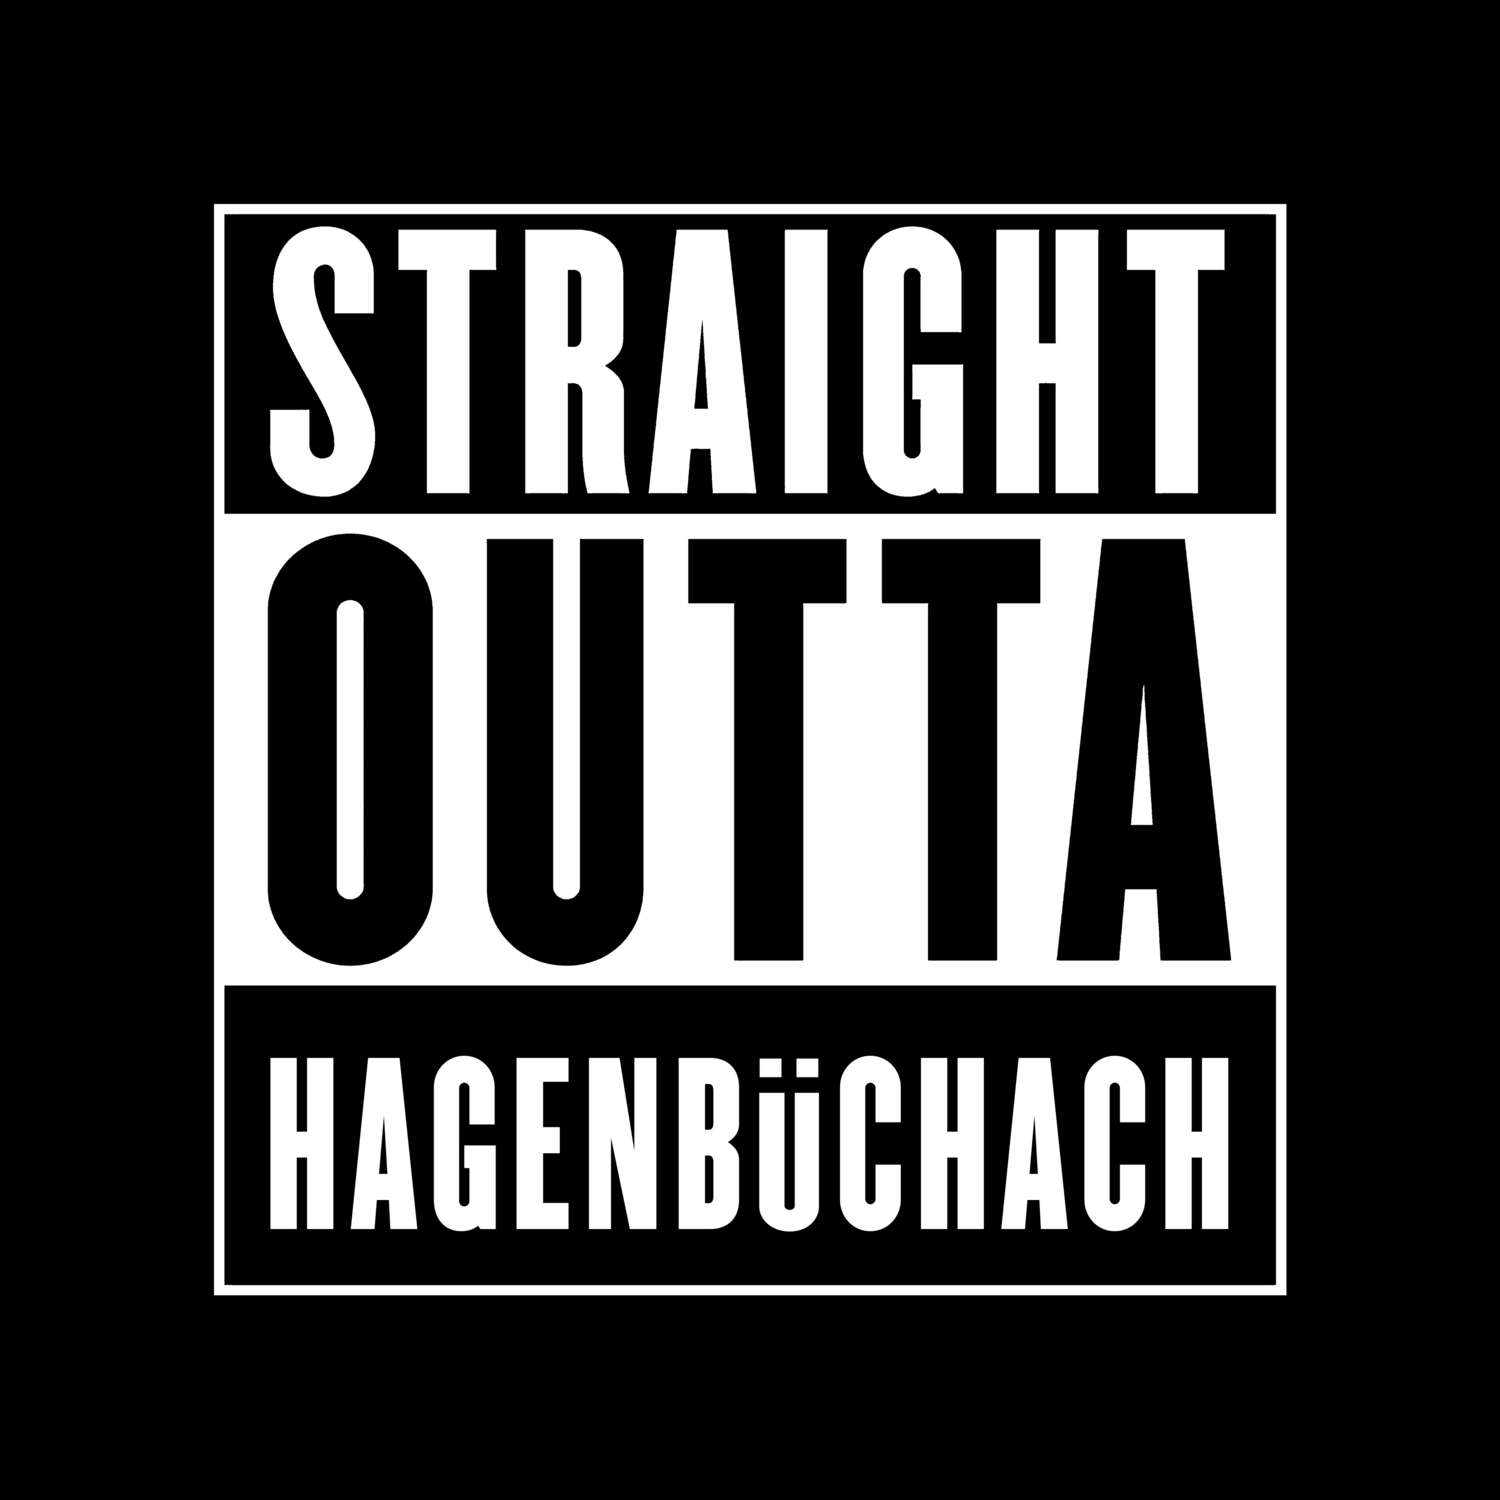 Hagenbüchach T-Shirt »Straight Outta«